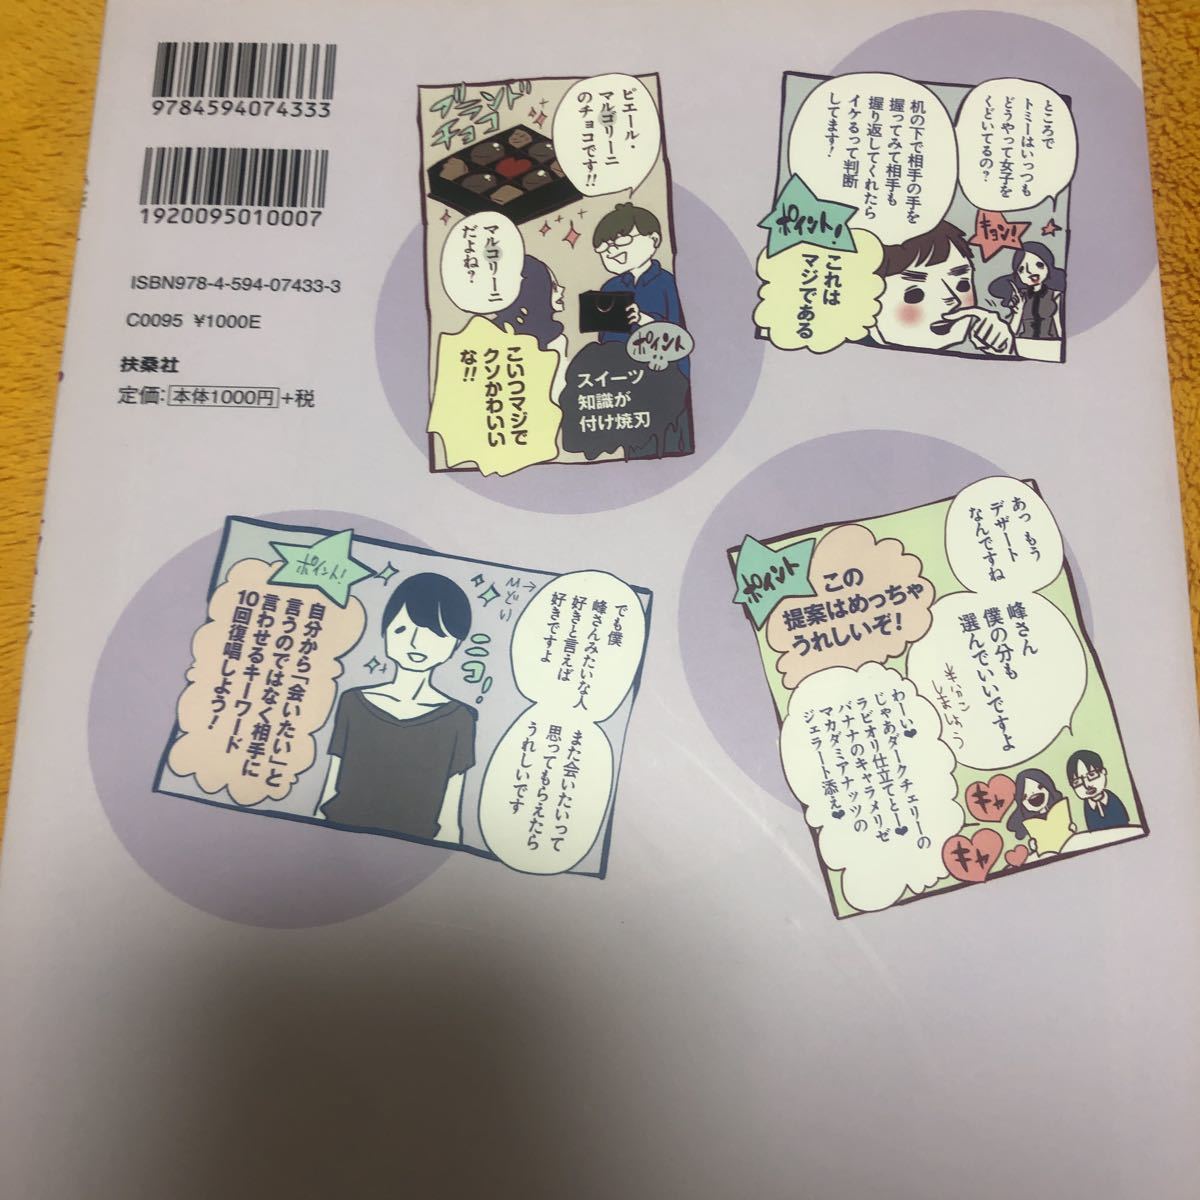 女くどき飯 峰なゆか 定価１０００円 漫画 コミック 売買されたオークション情報 Yahooの商品情報をアーカイブ公開 オークファン Aucfan Com